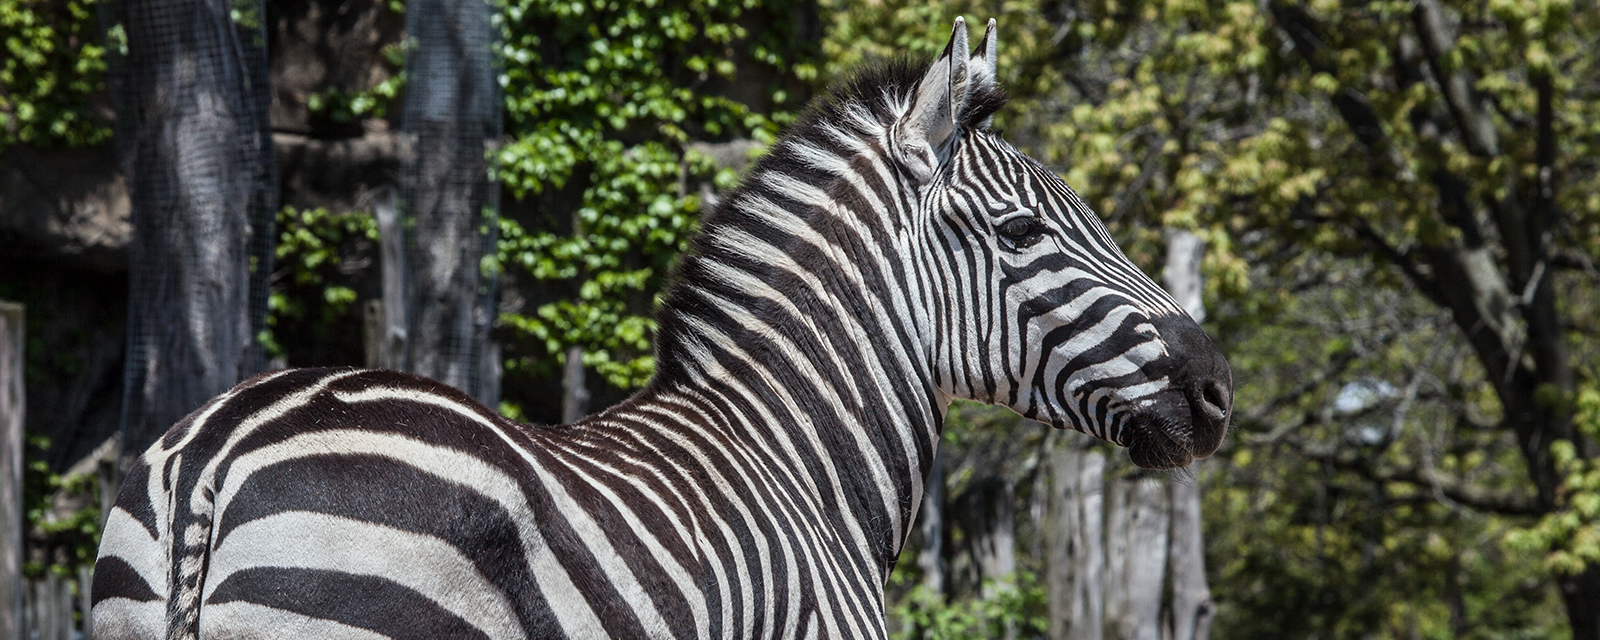 Plains Zebra - Lincoln Park Zoo